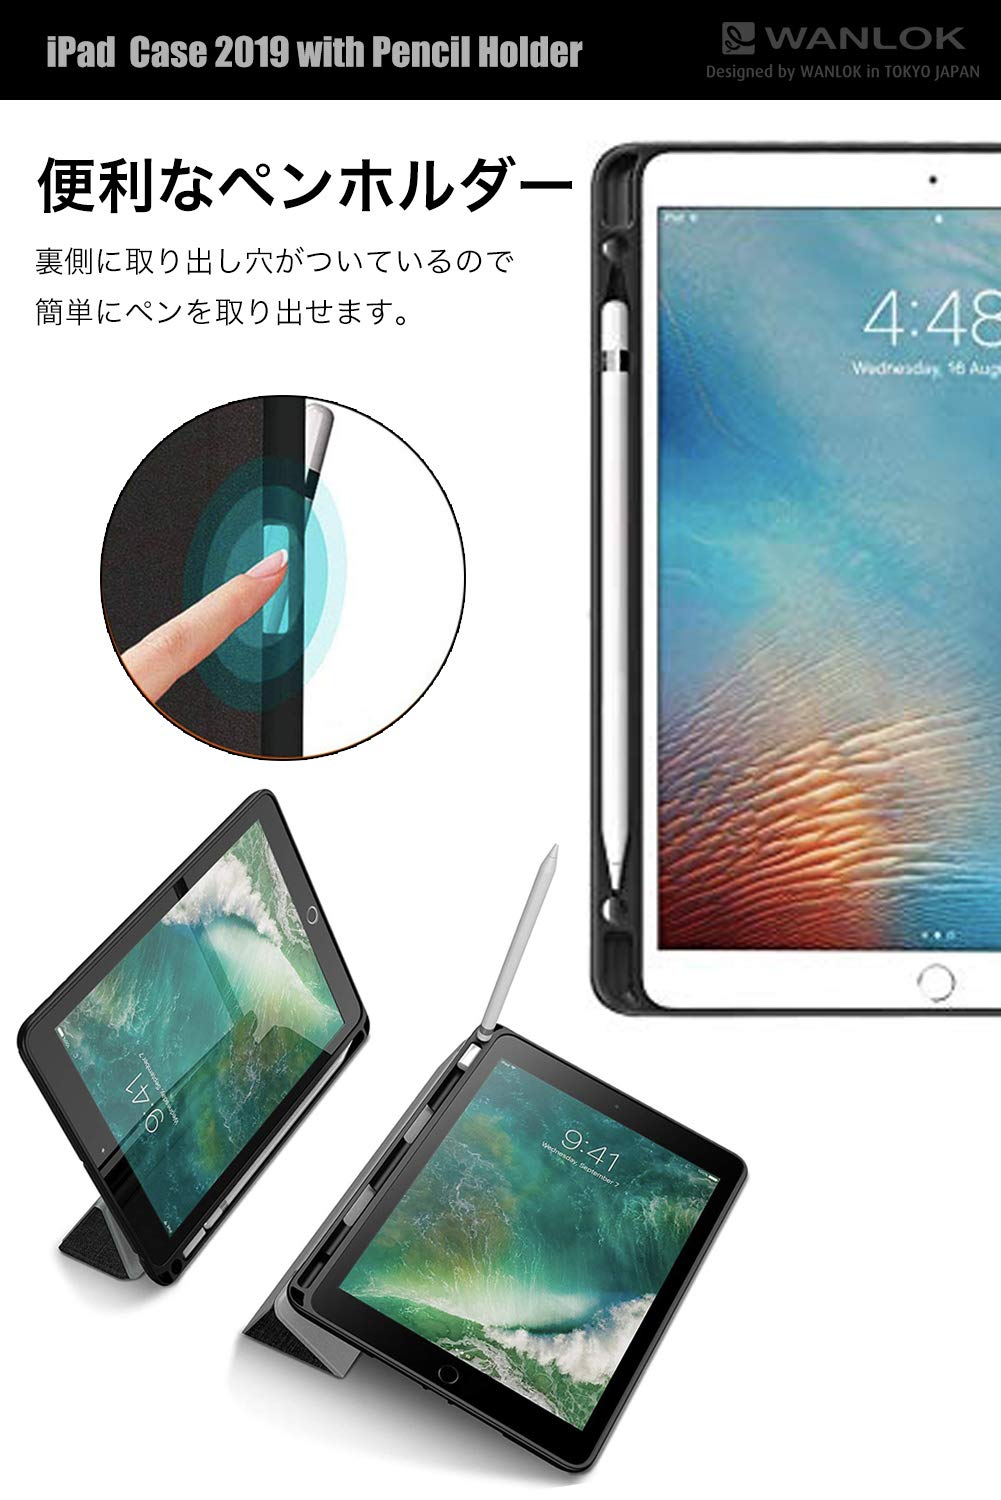 19新型ipad Air 10 5 第3世代 専用 アップルペンシルを収納できるスマートケースをamazon Co Jpで販売開始 Newscast